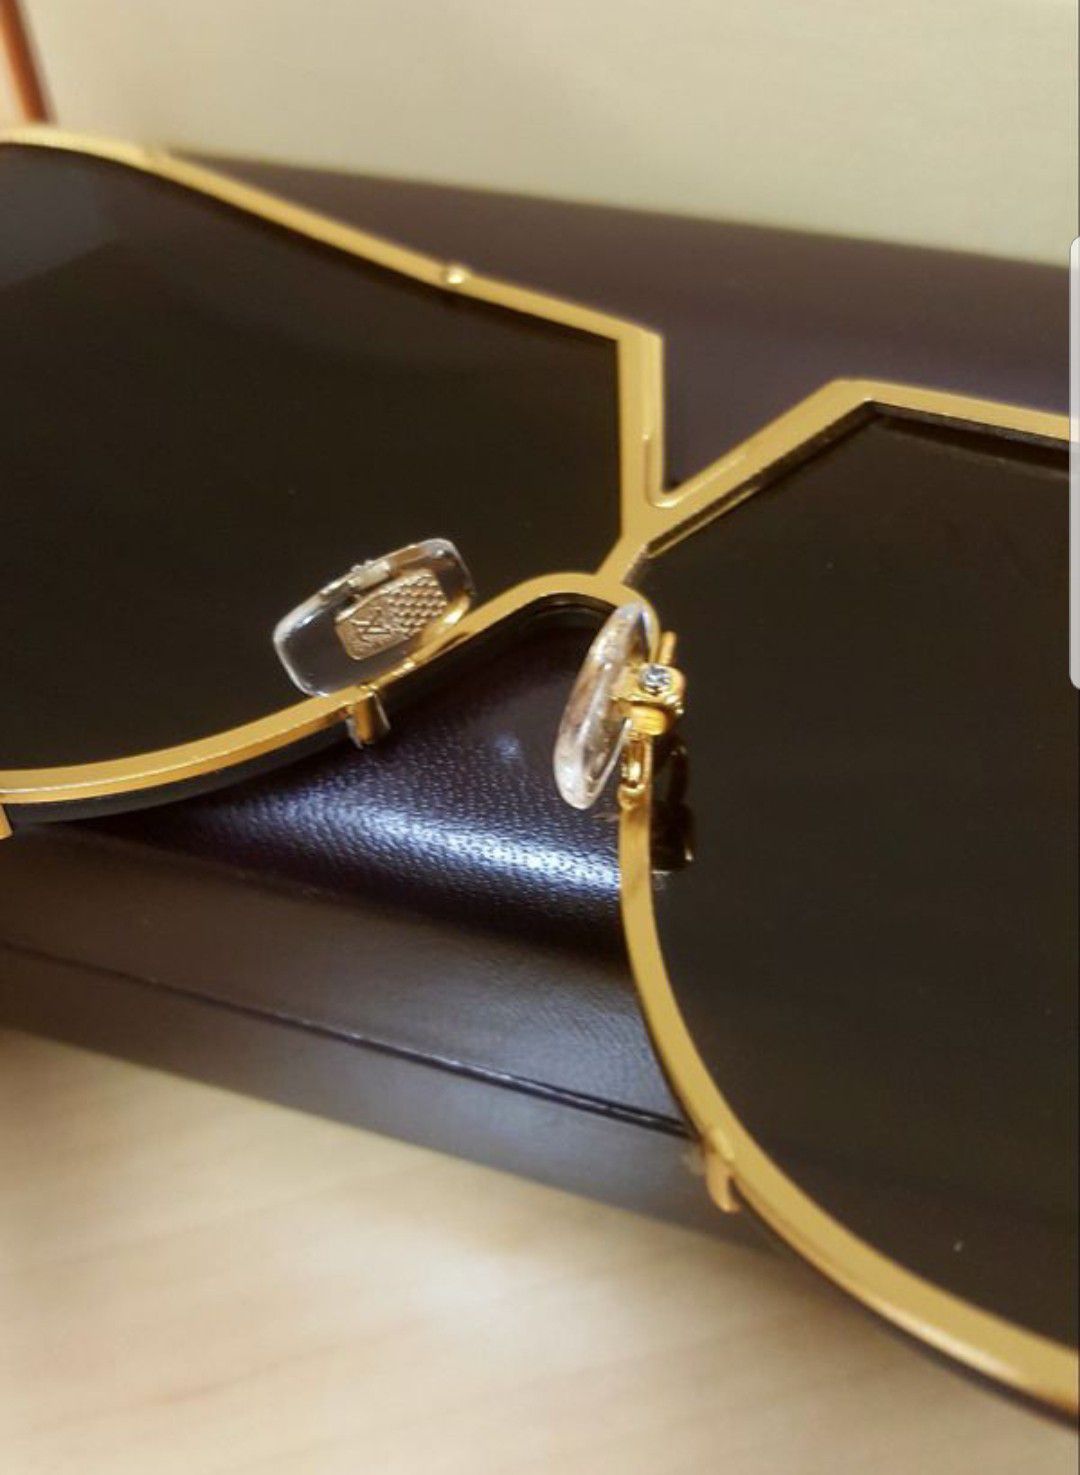 Louis Vuitton, Accessories, Louis Vuitton Grayblack Damier Sunglasses